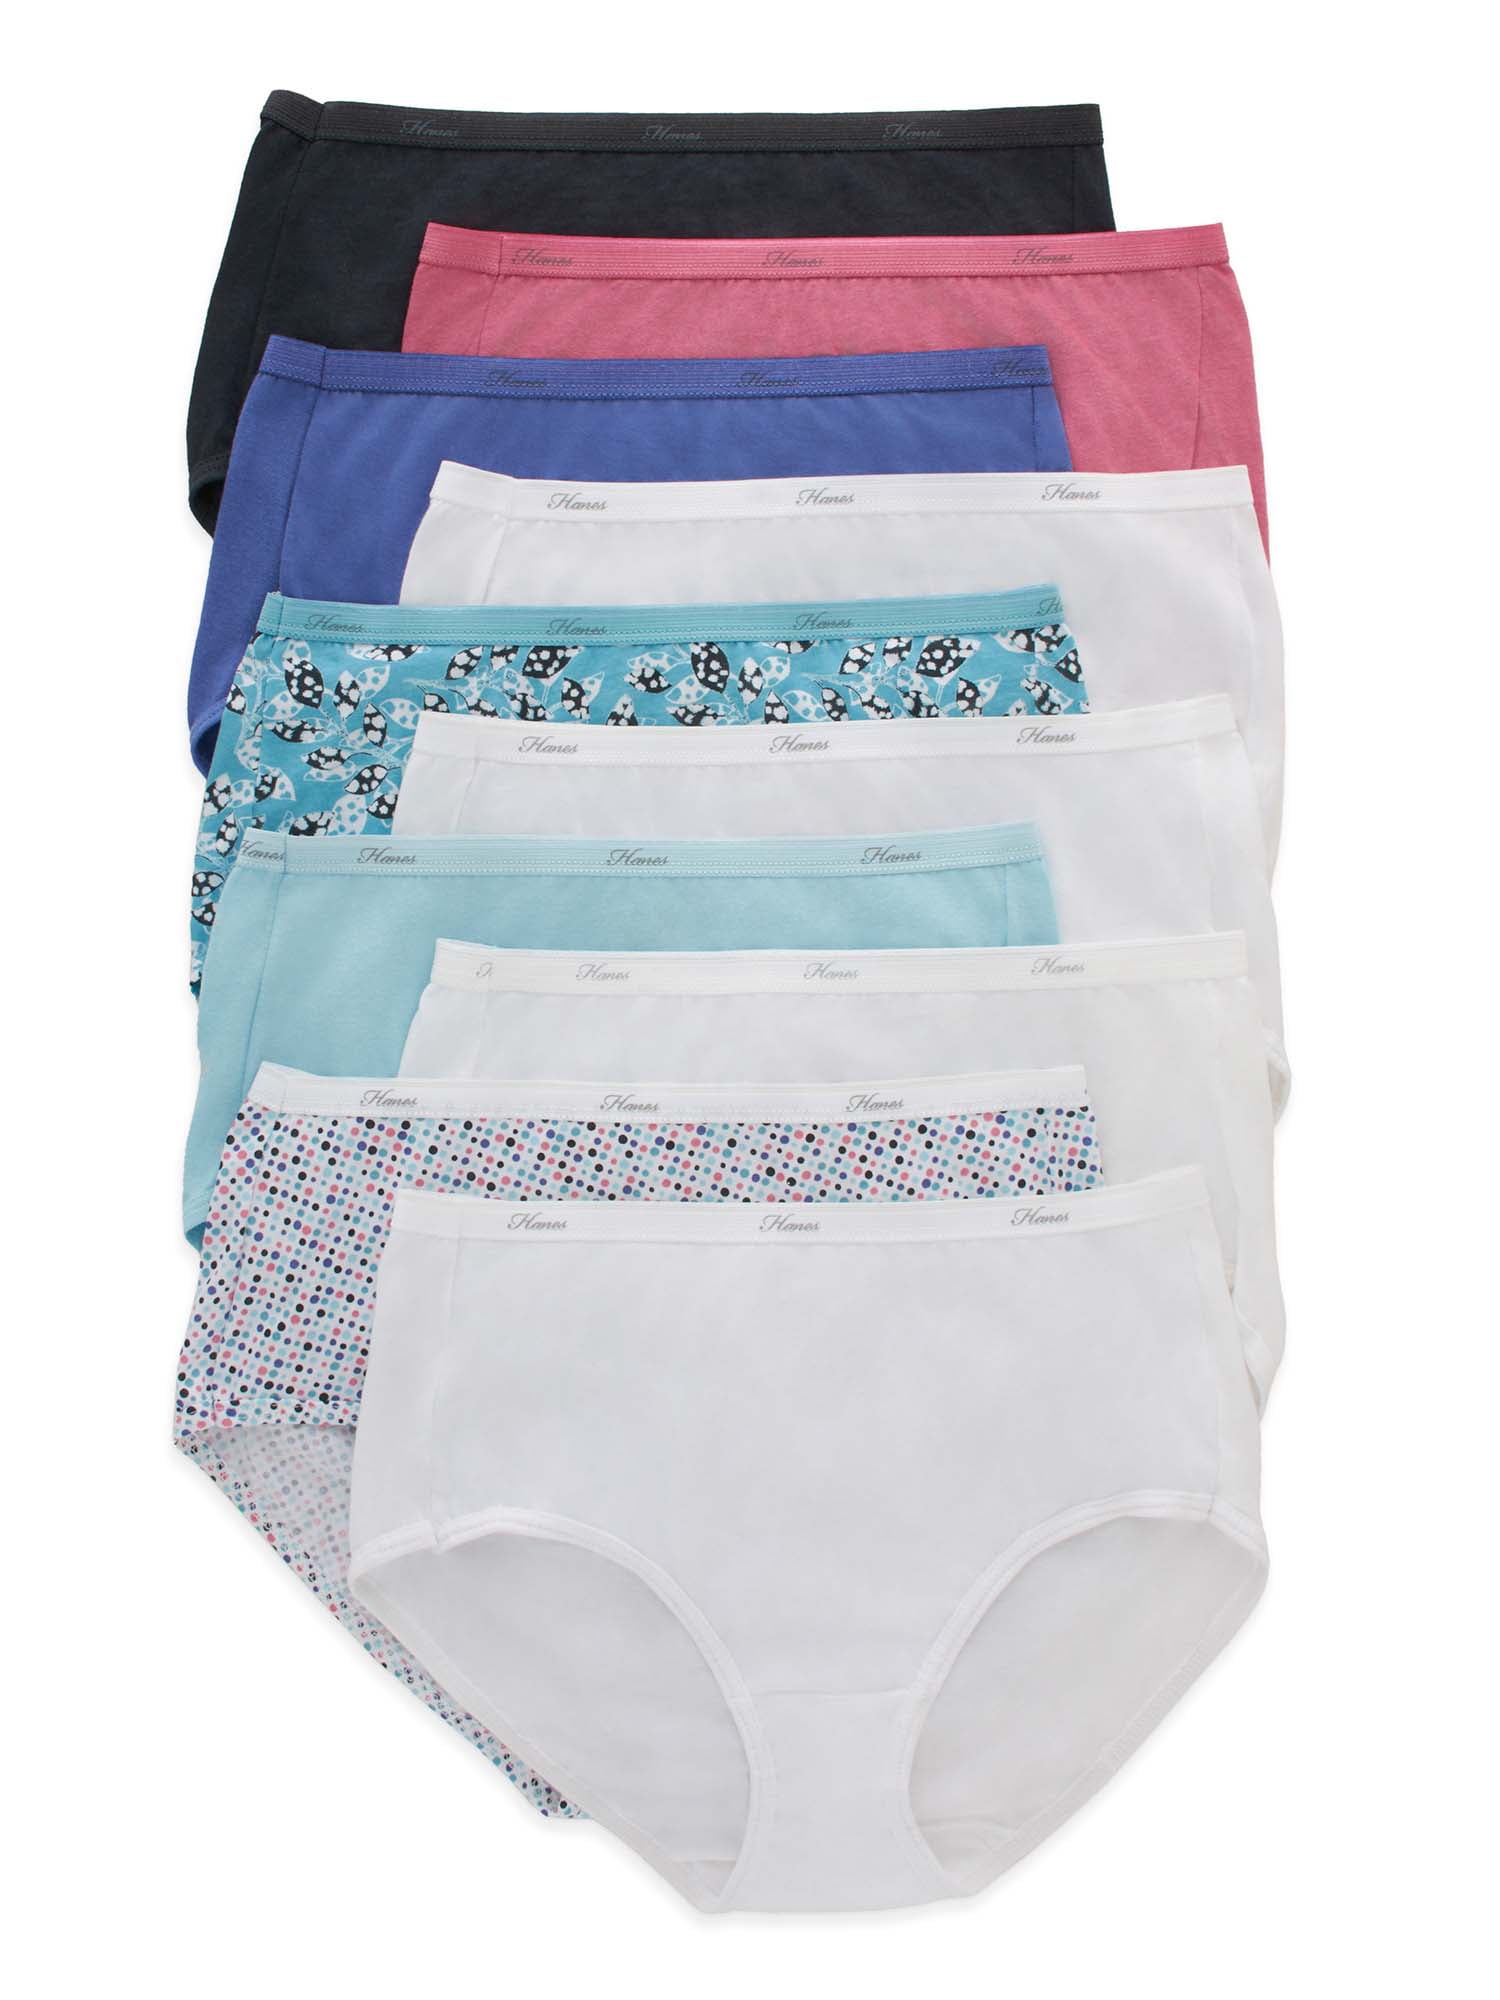 6/12 Pack Womans Underwear Ladies Full Briefs Womens Knickers Cotton Panties 